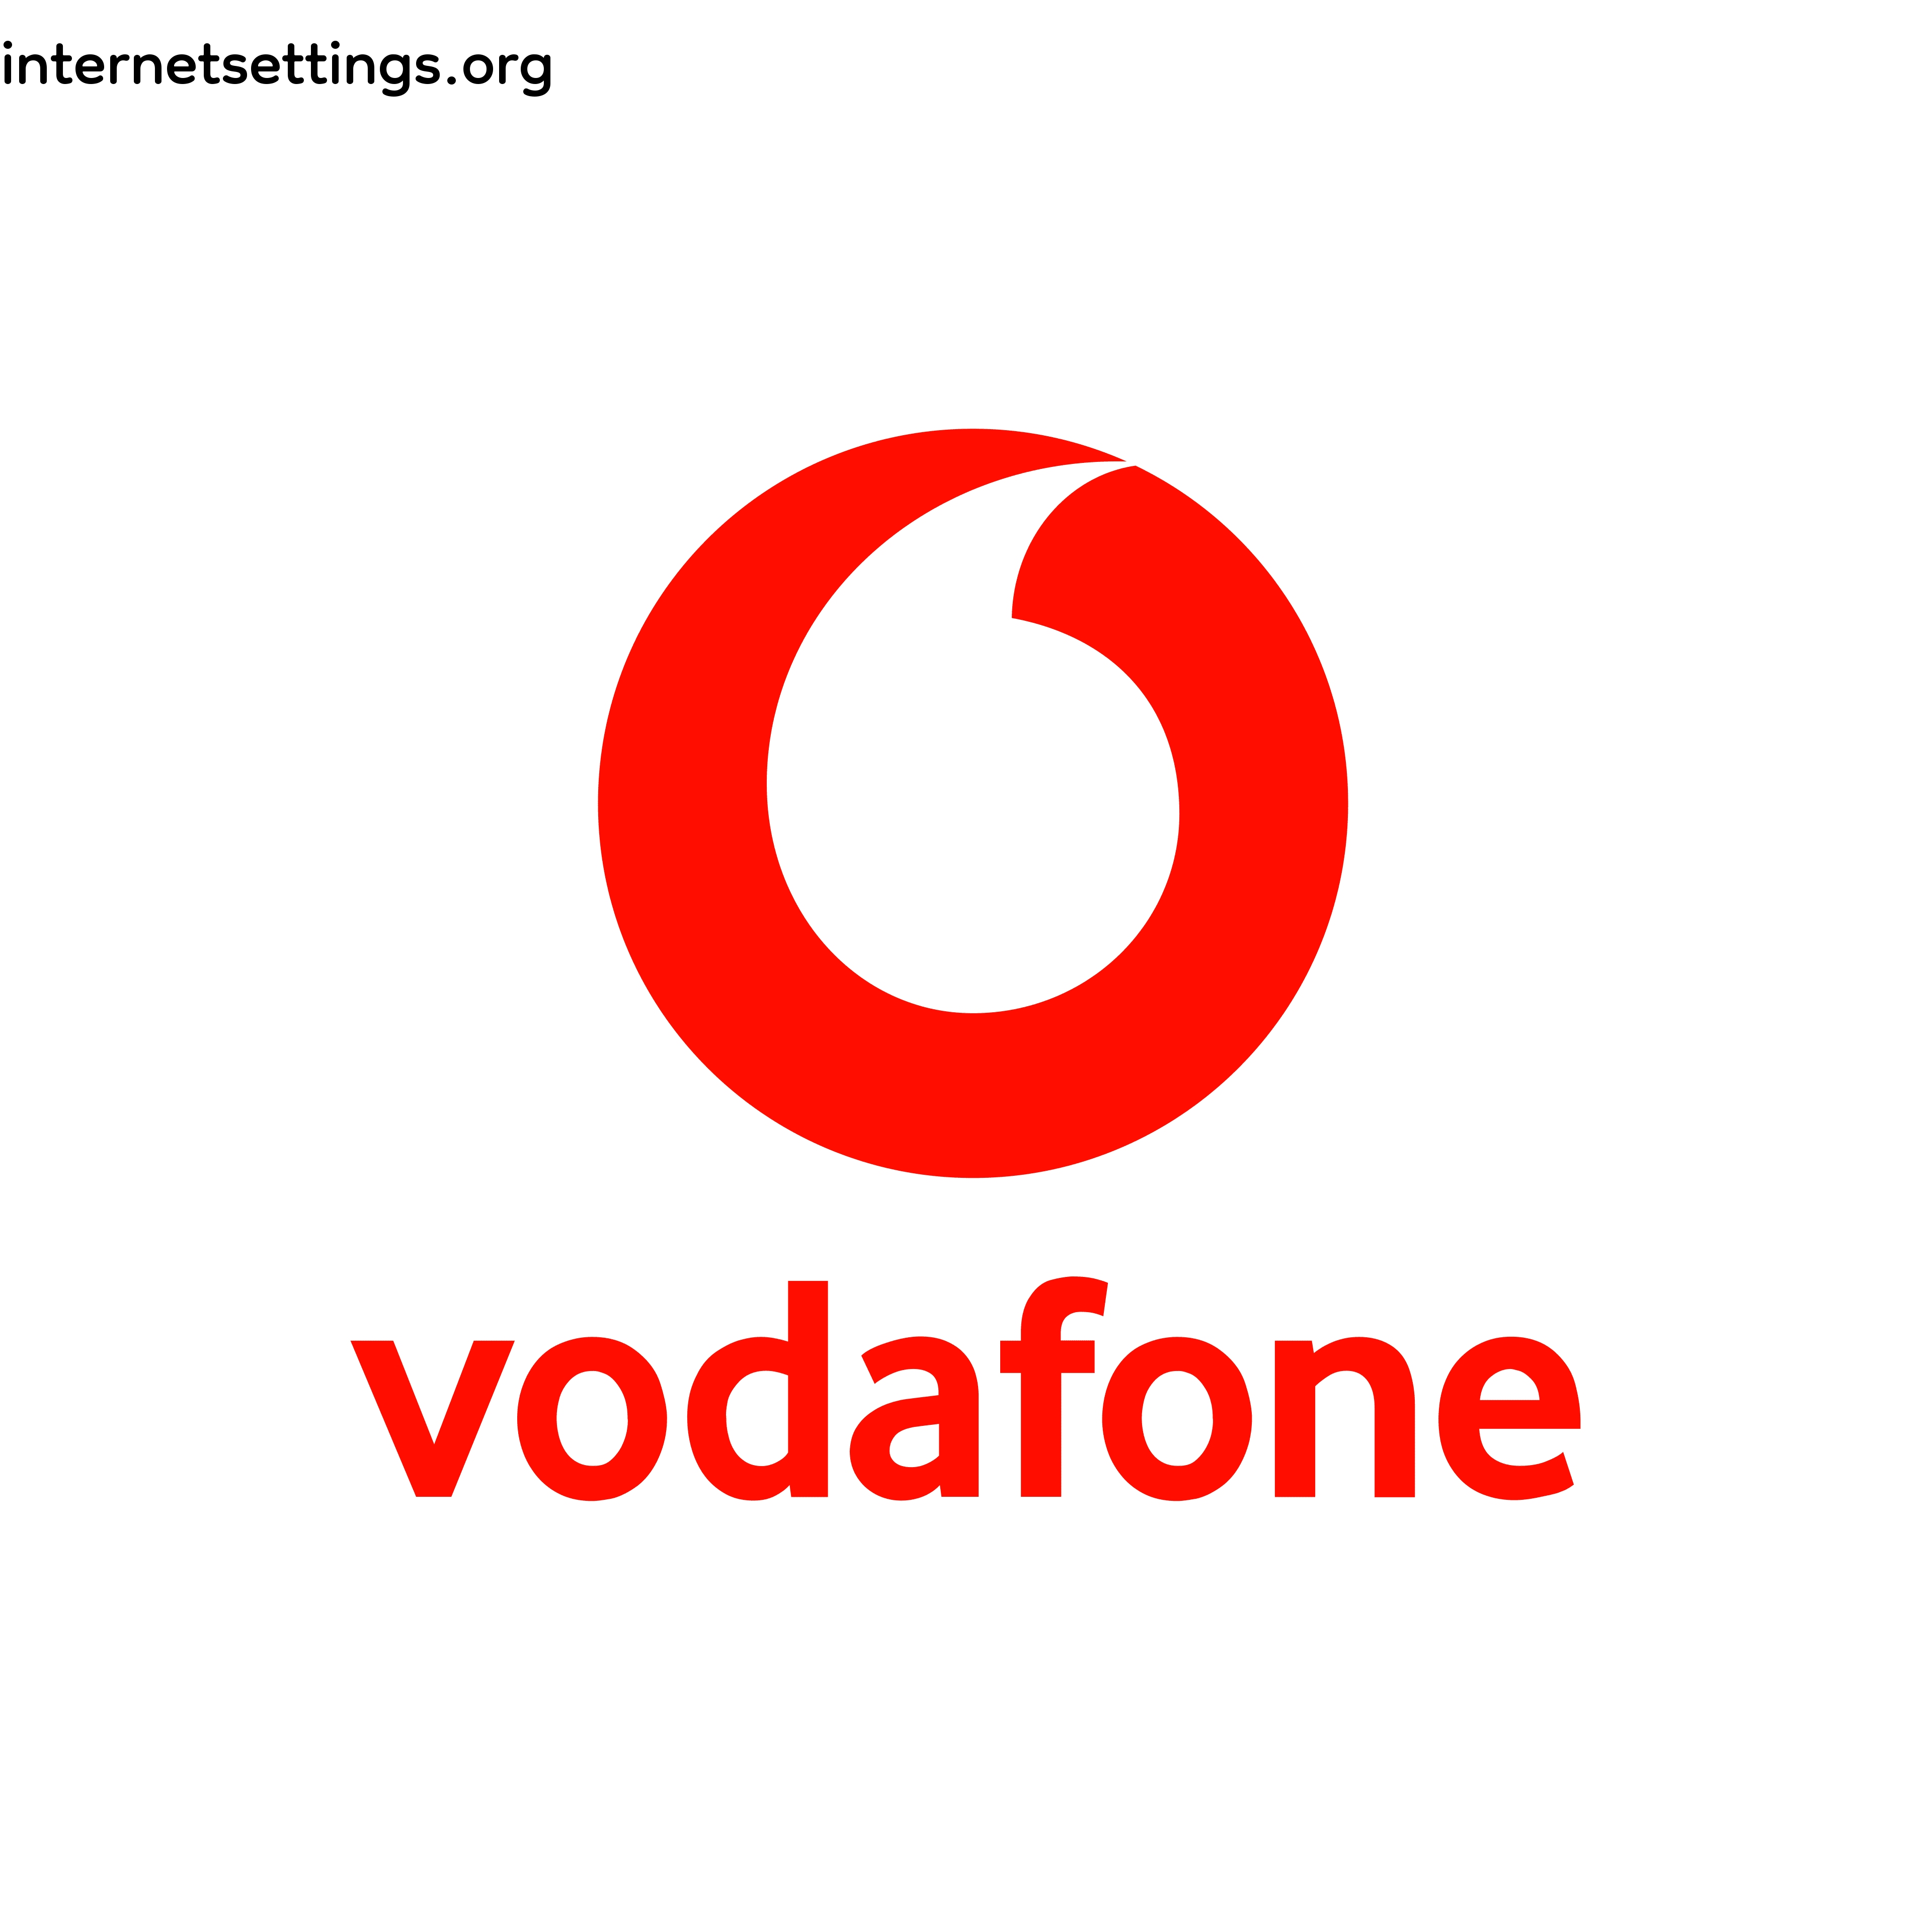 Vodafone Iceland (Og Vodafone, Íslandssími)